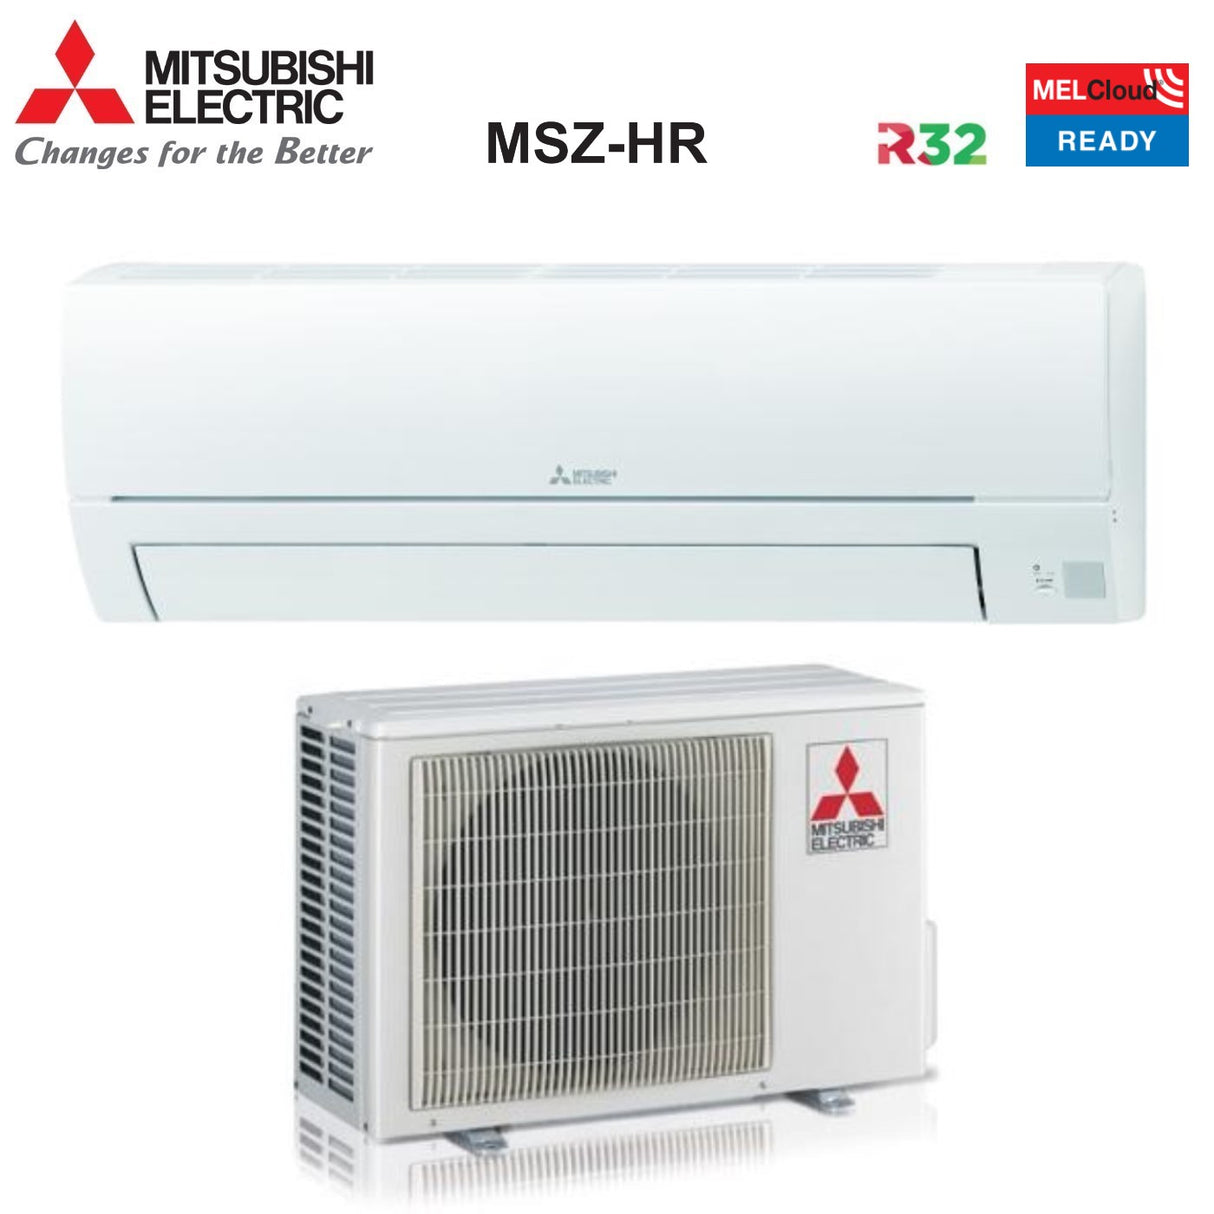 immagine-1-mitsubishi-electric-area-occasioni-climatizzatore-condizionatore-mitsubishi-electric-inverter-serie-smart-msz-hr-21000-btu-msz-hr60vf-r-32-wi-fi-optional-classe-aa